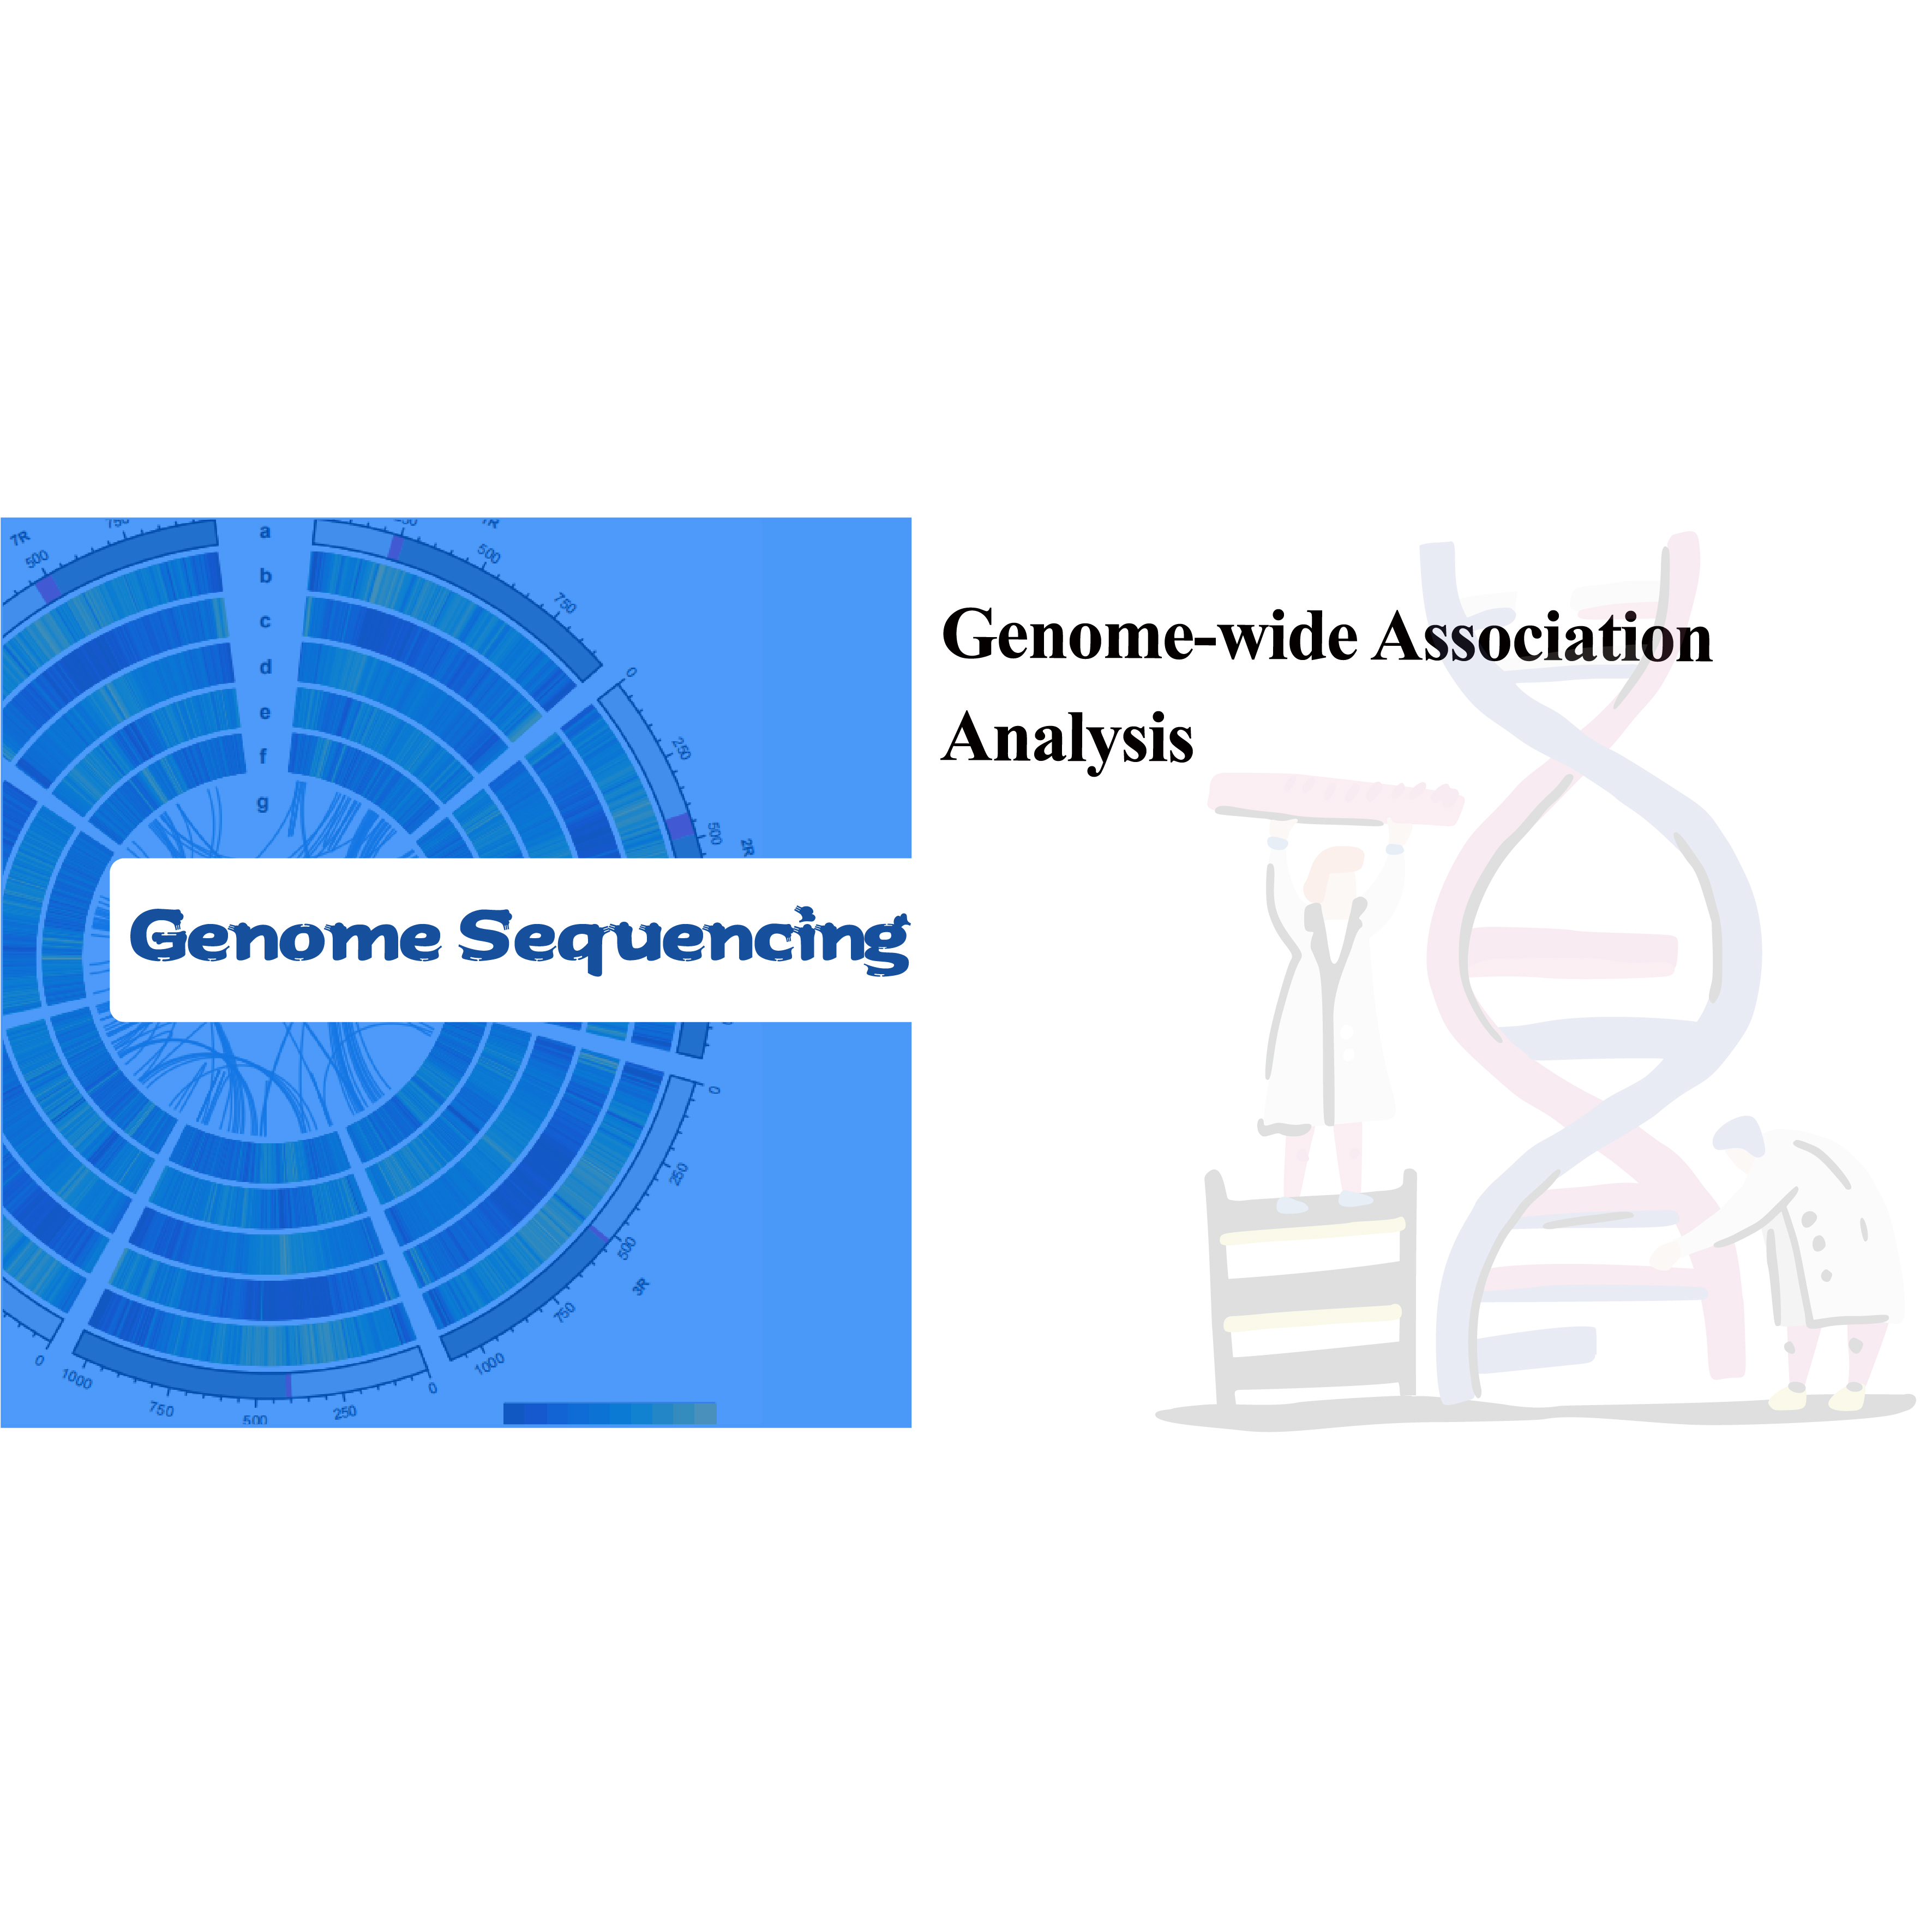 Análise de associação em todo o genoma